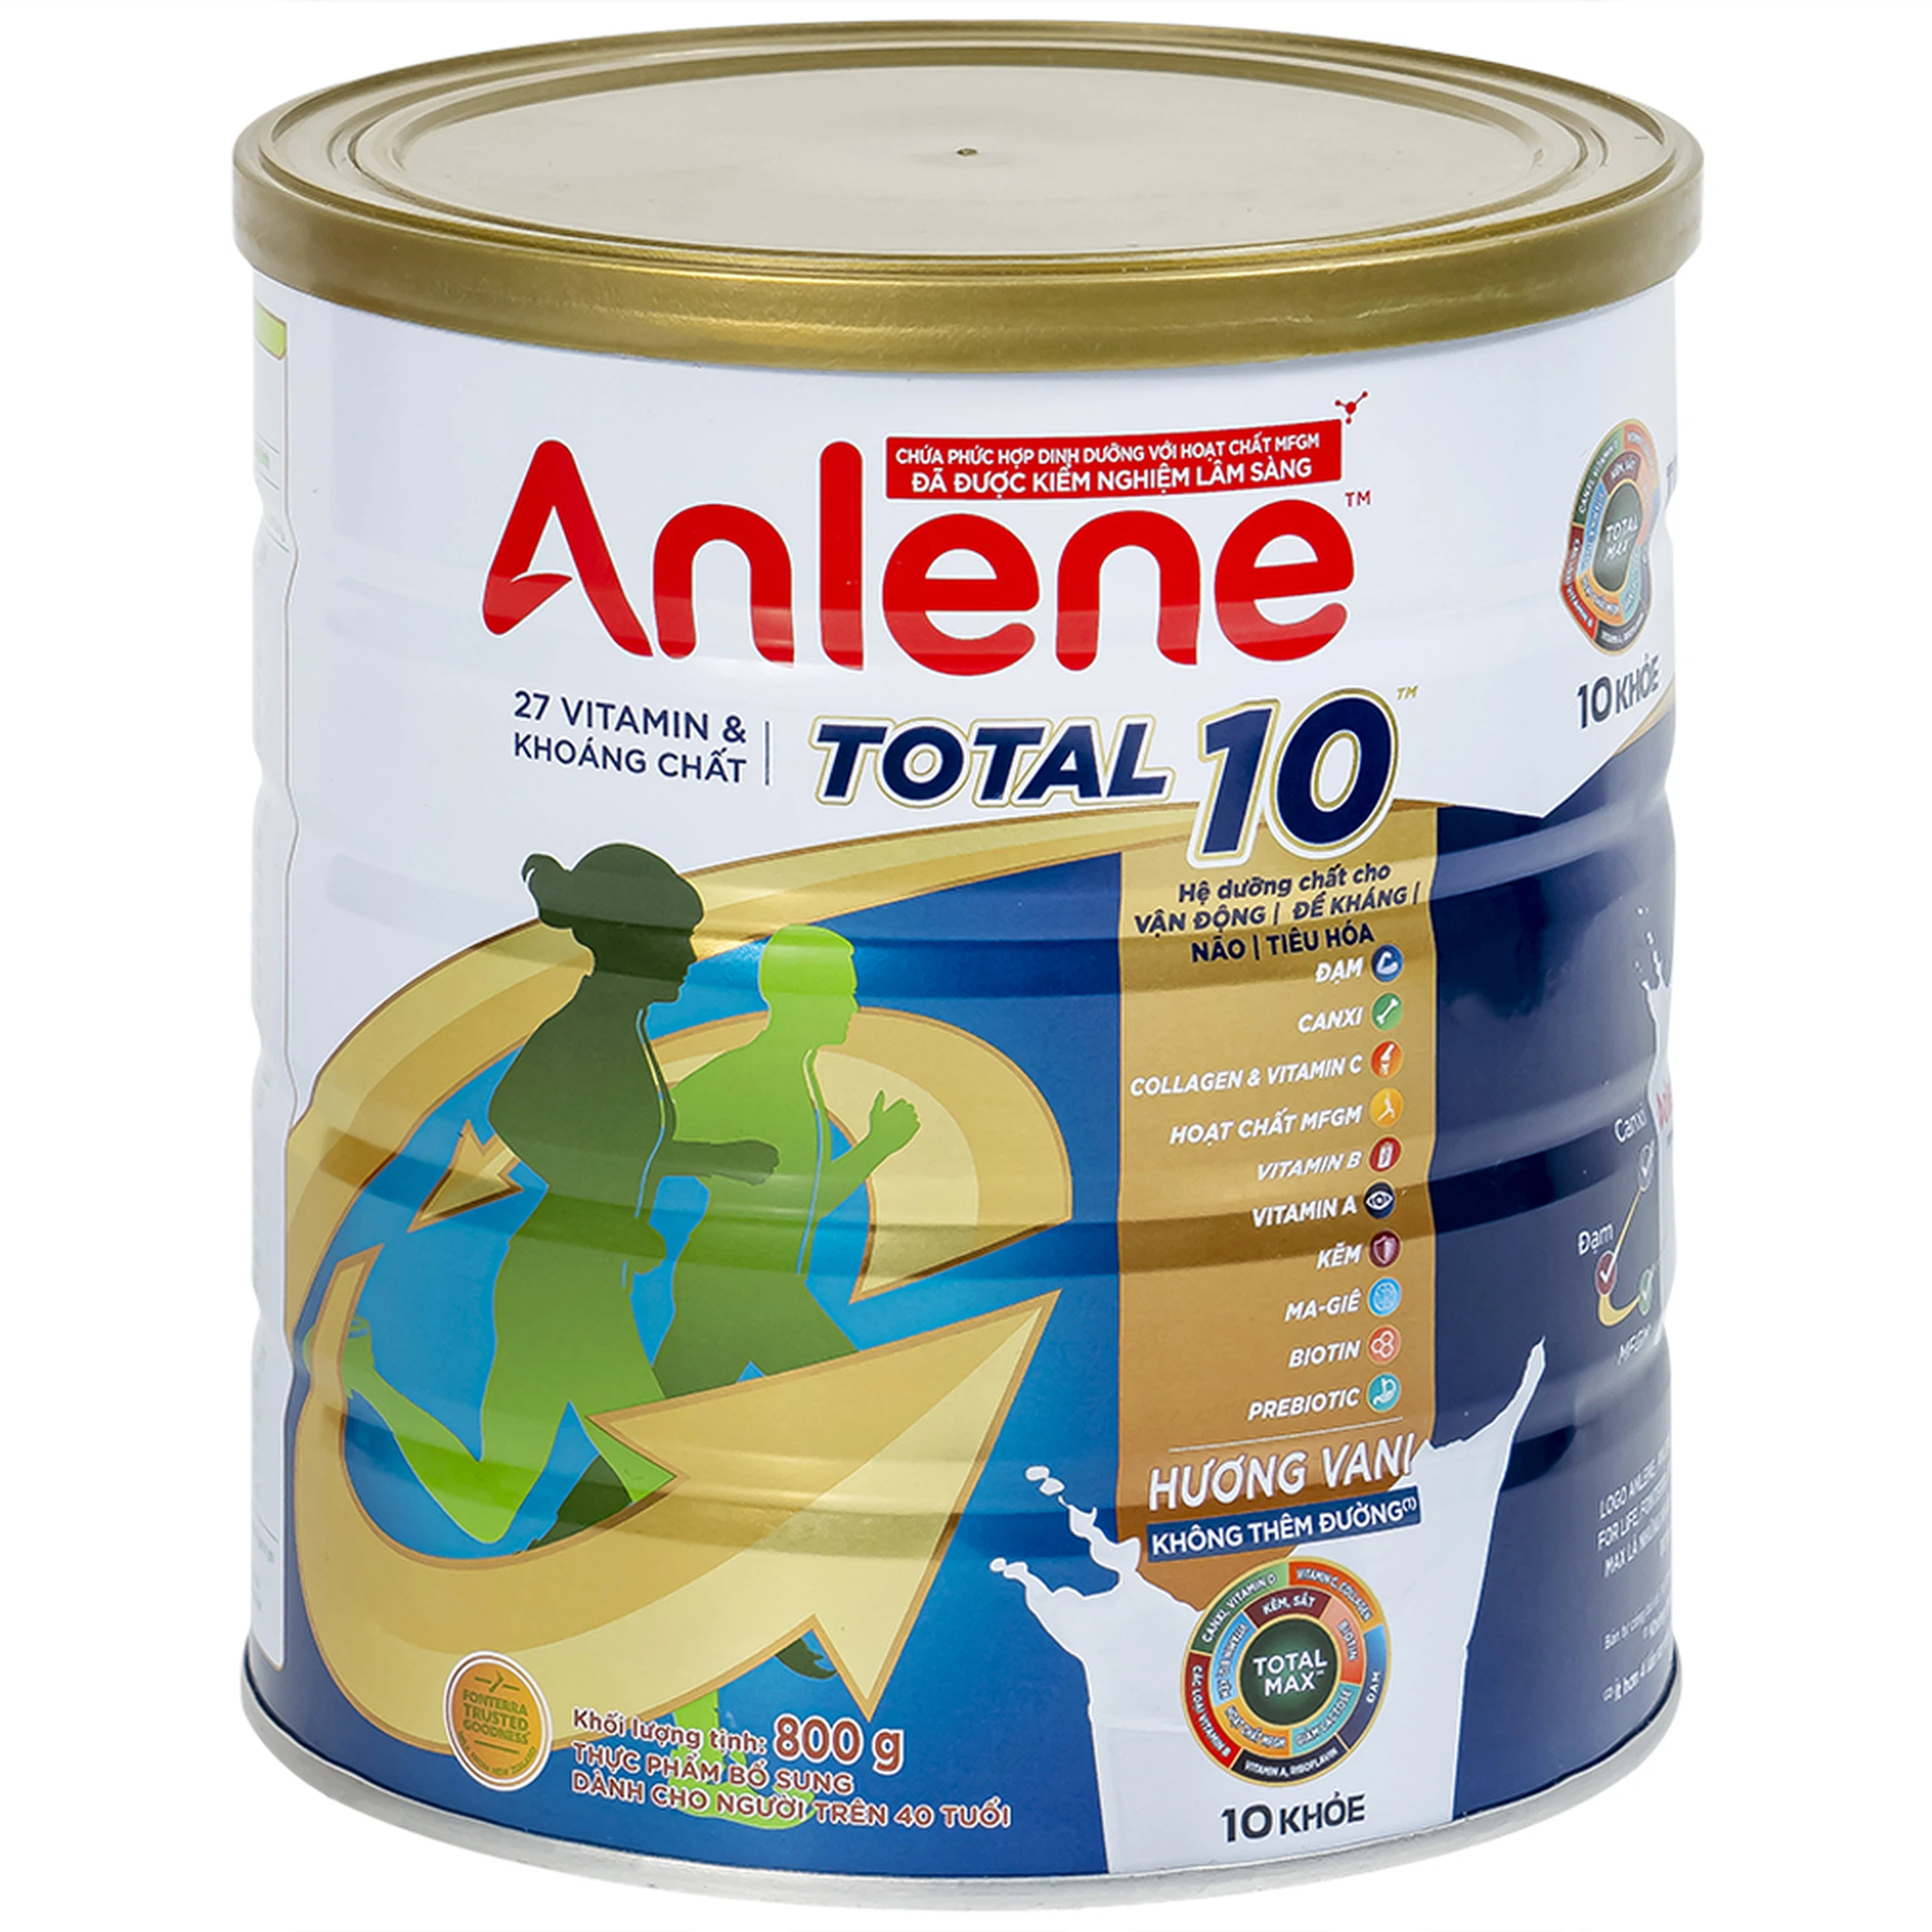 Sữa Anlene Total 10 hương vani bổ sung hệ dưỡng chất cho vận động, tiêu hóa cho người trên 40 tuổi (800g)